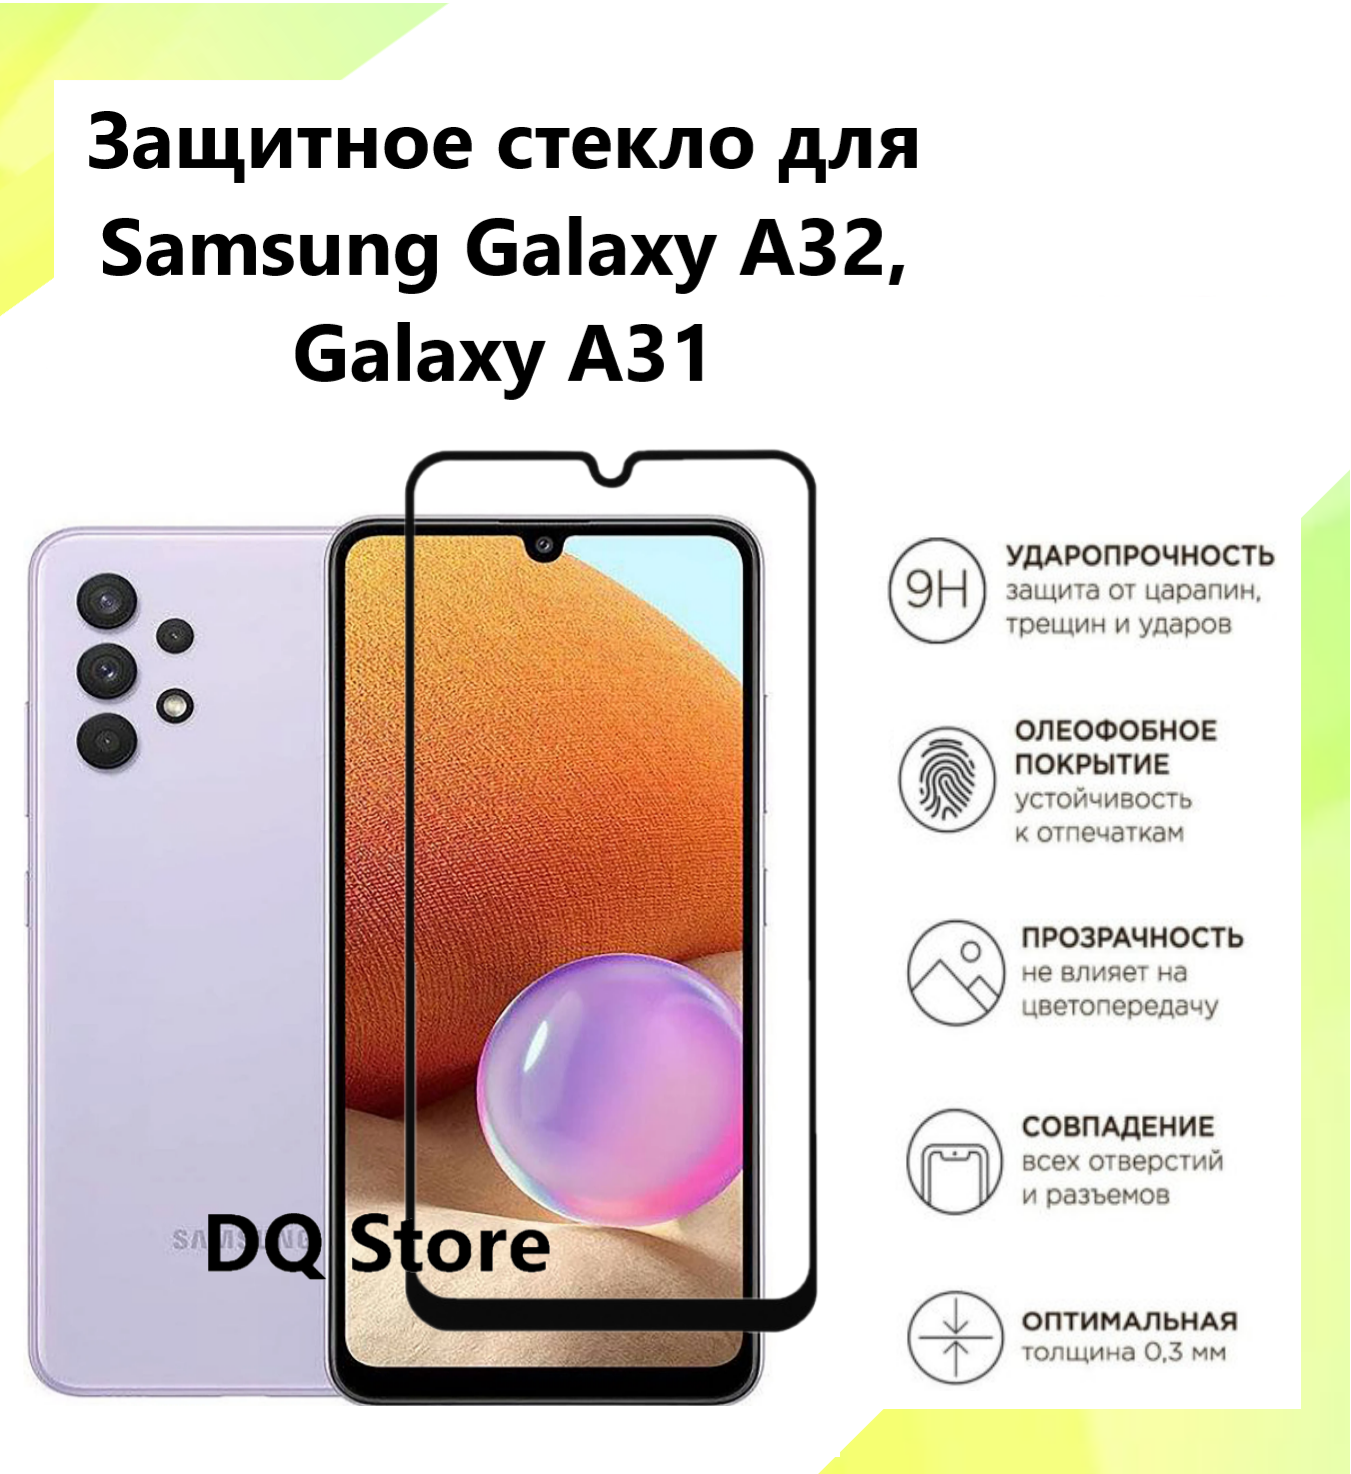 Защитное стекло на Samsung Galaxy A32 / Galaxy A31 / Самсунг Галакси А32 / Галакси А31 . Полноэкранное защитное стекло с олеофобным покрытием